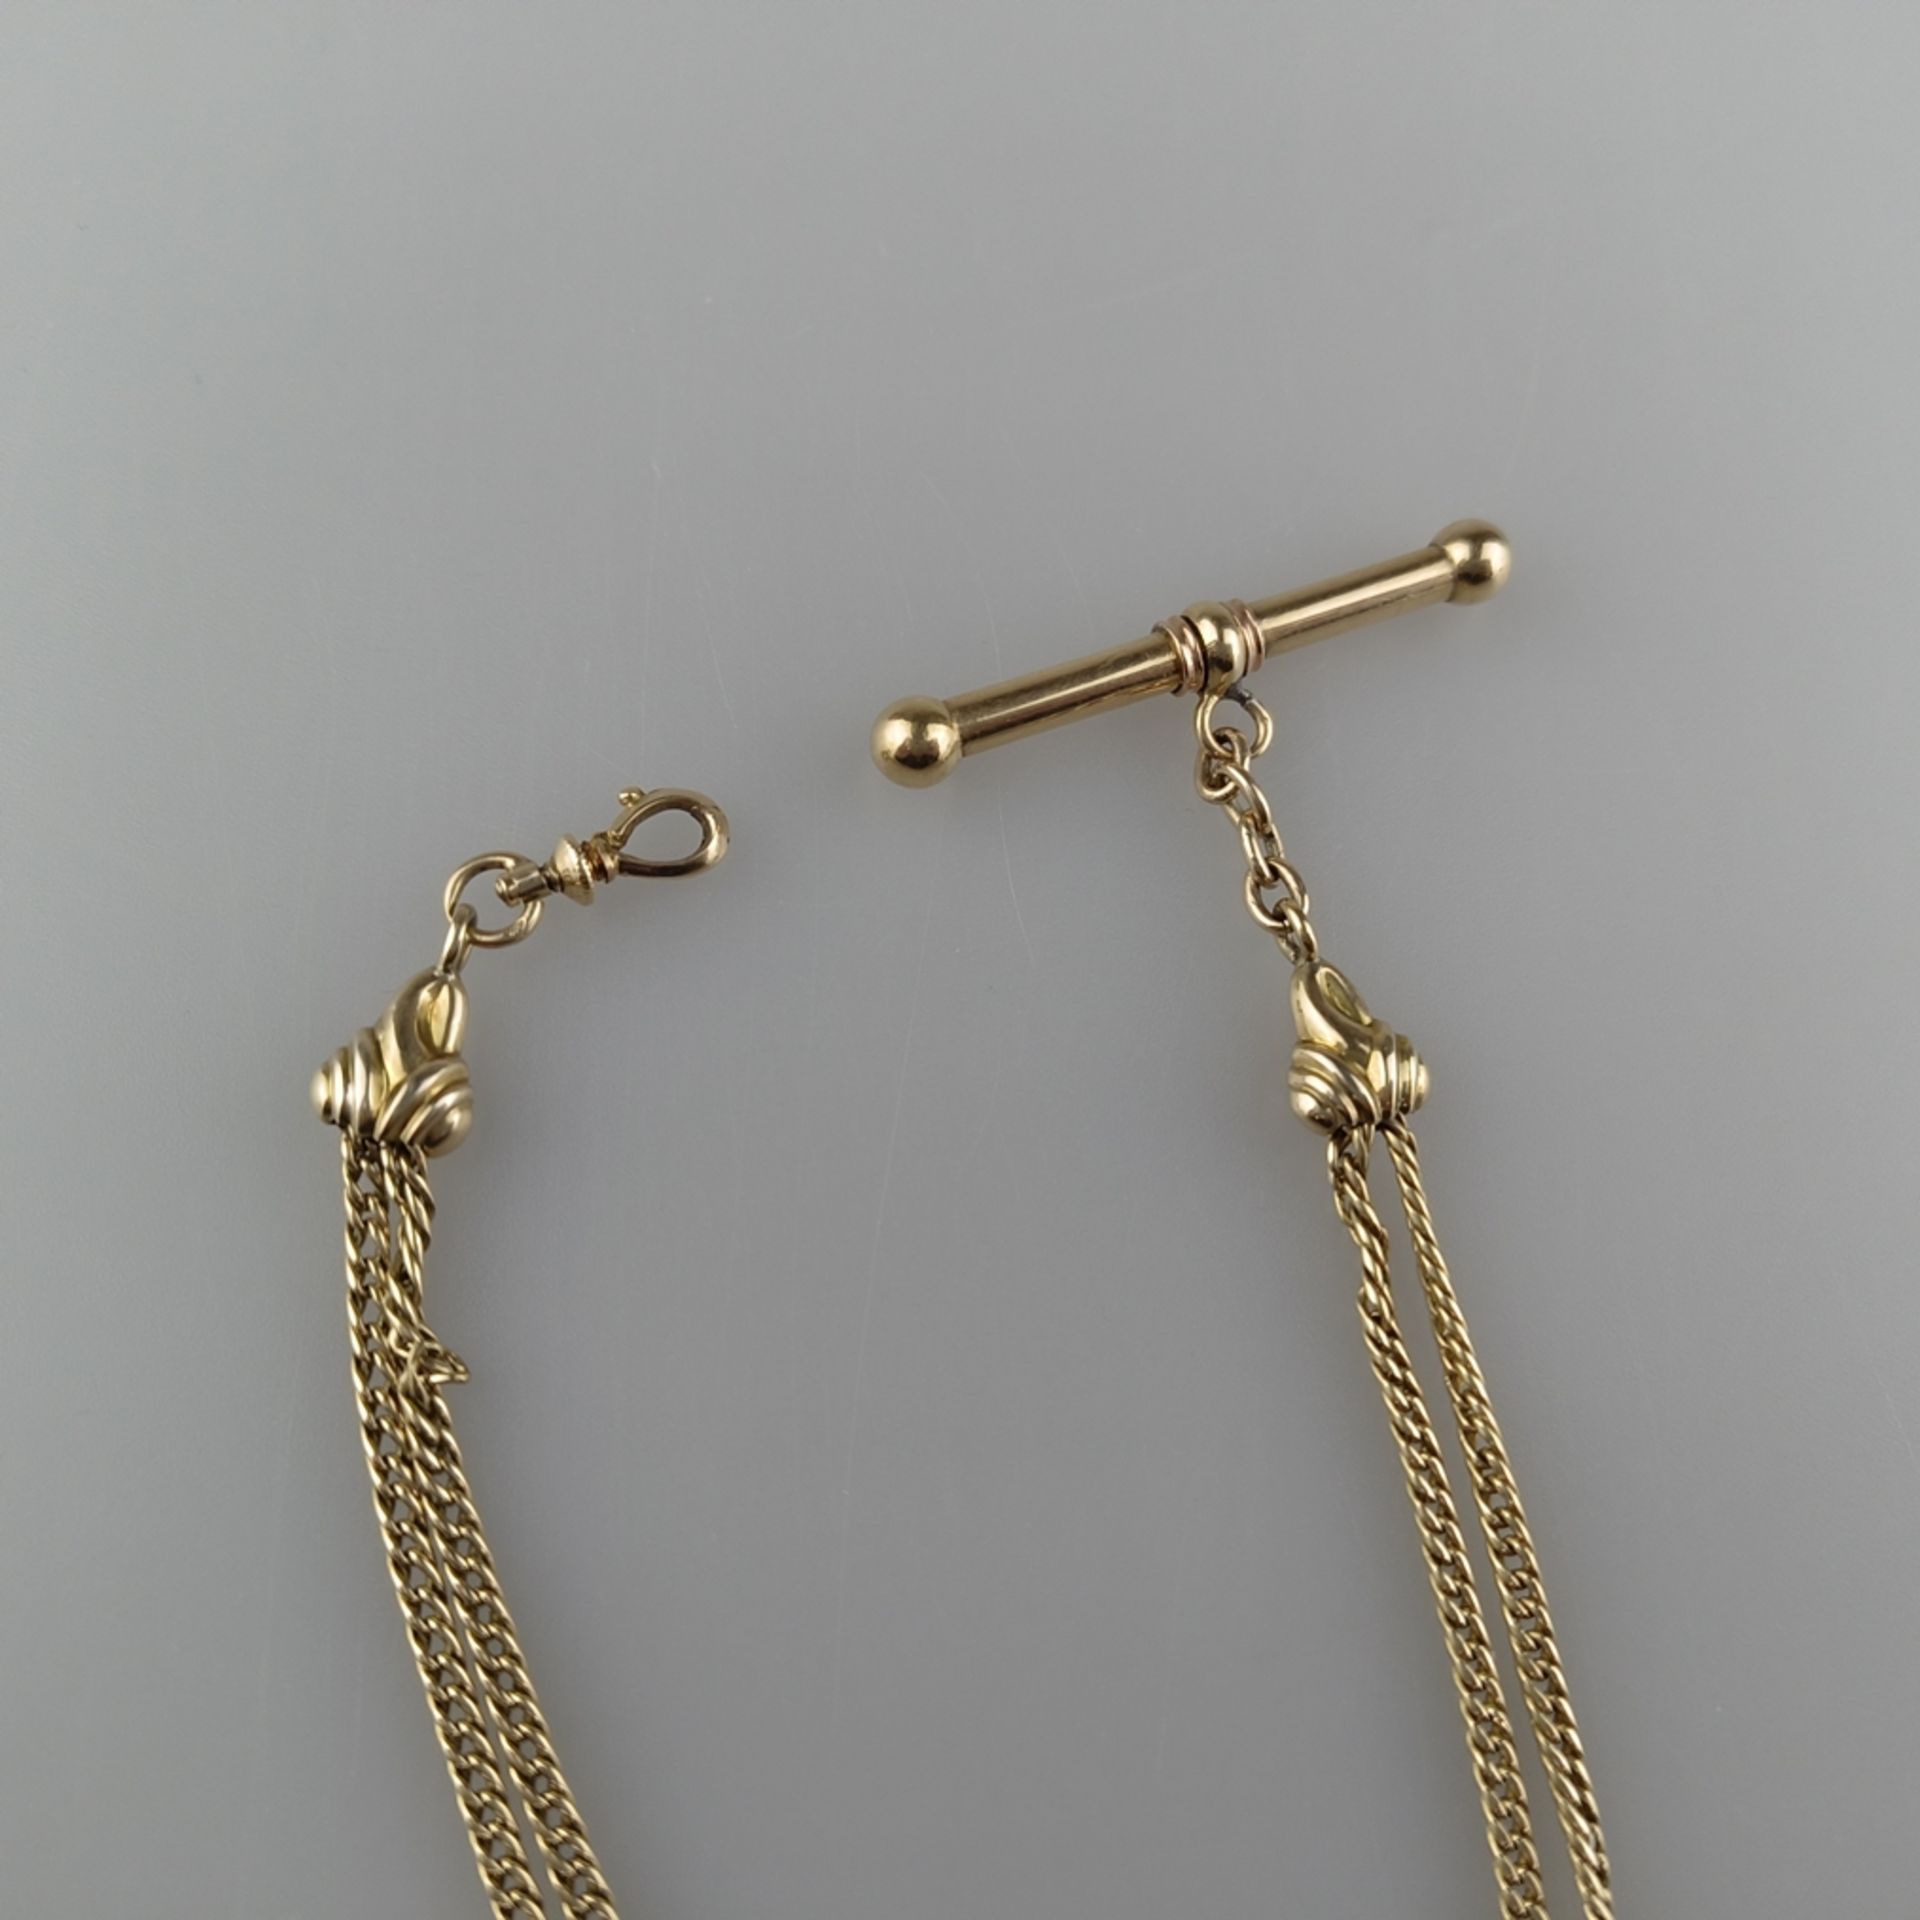 Taschenuhren-Knebelkette - 14K Gelbgold (585/000), mit ovalem Medaillonanhänger aus Schaumgold, L. - Image 4 of 5